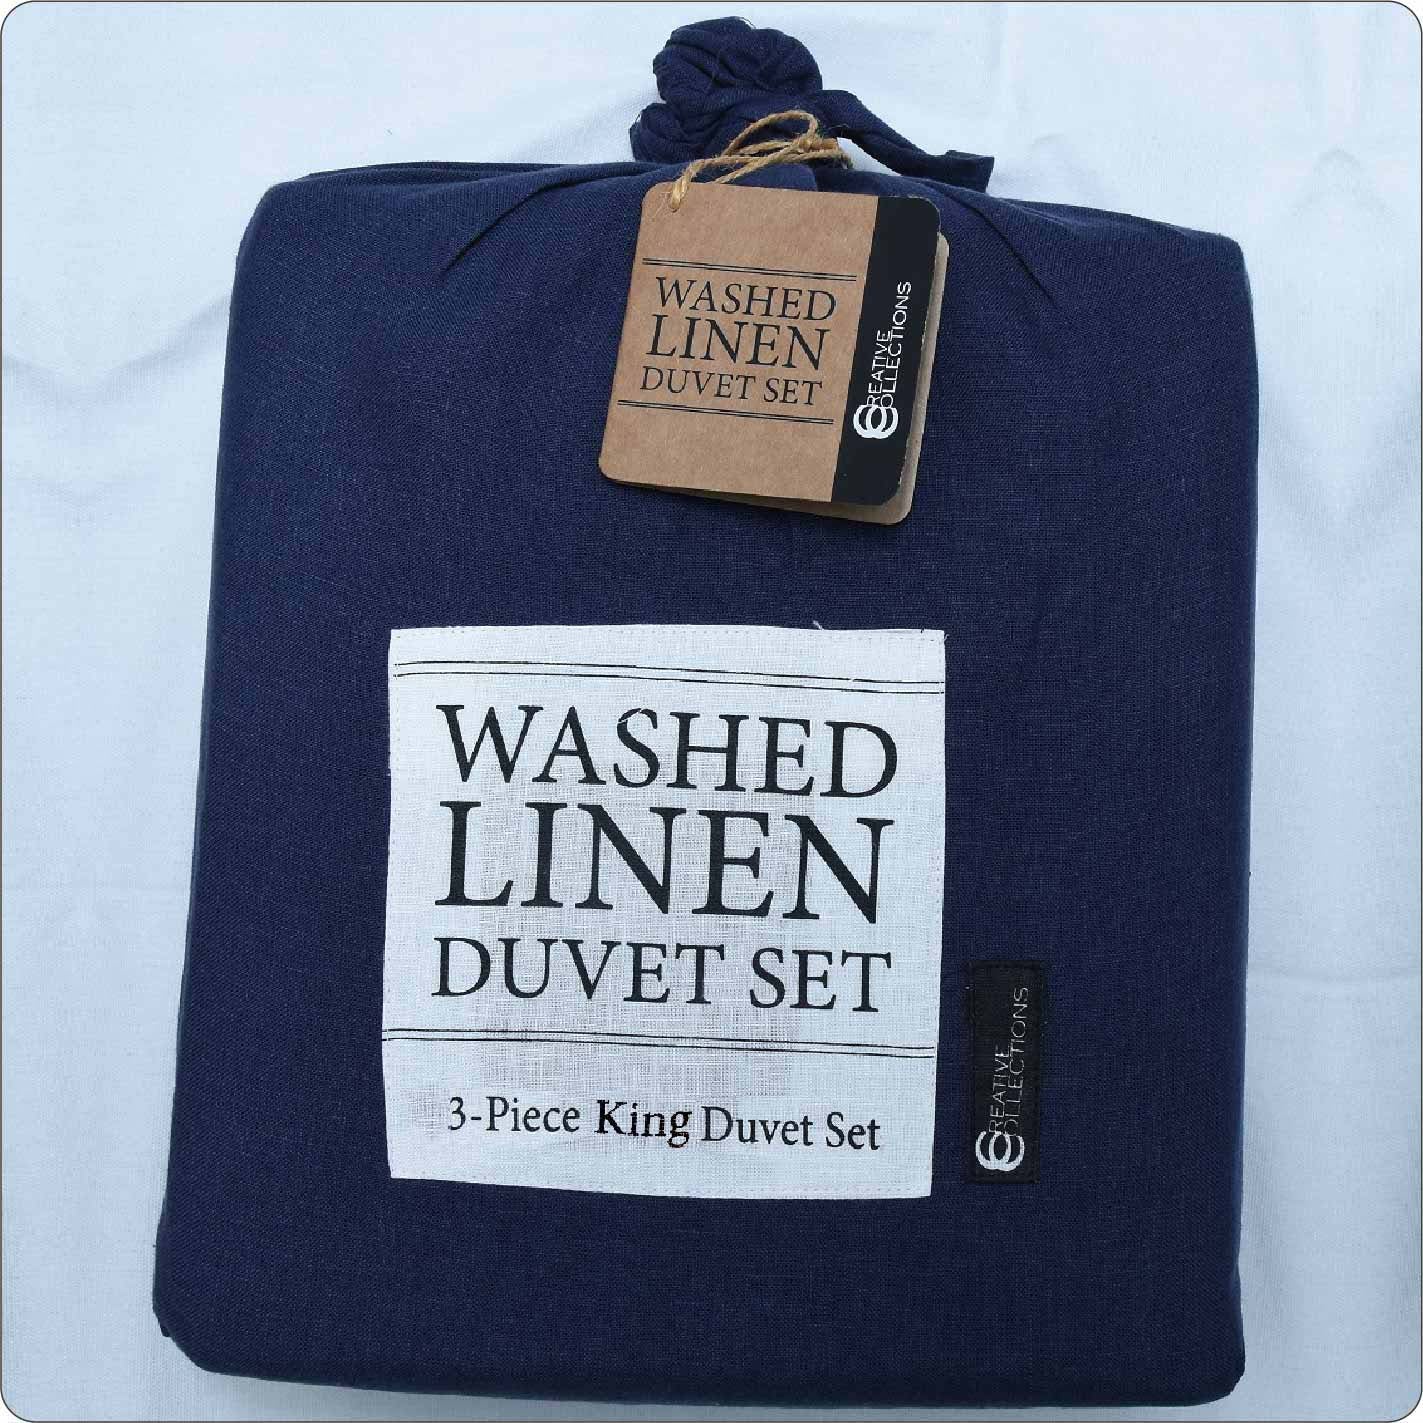 Pre-Washed Belgian Linen Bed Duvet set MARINE